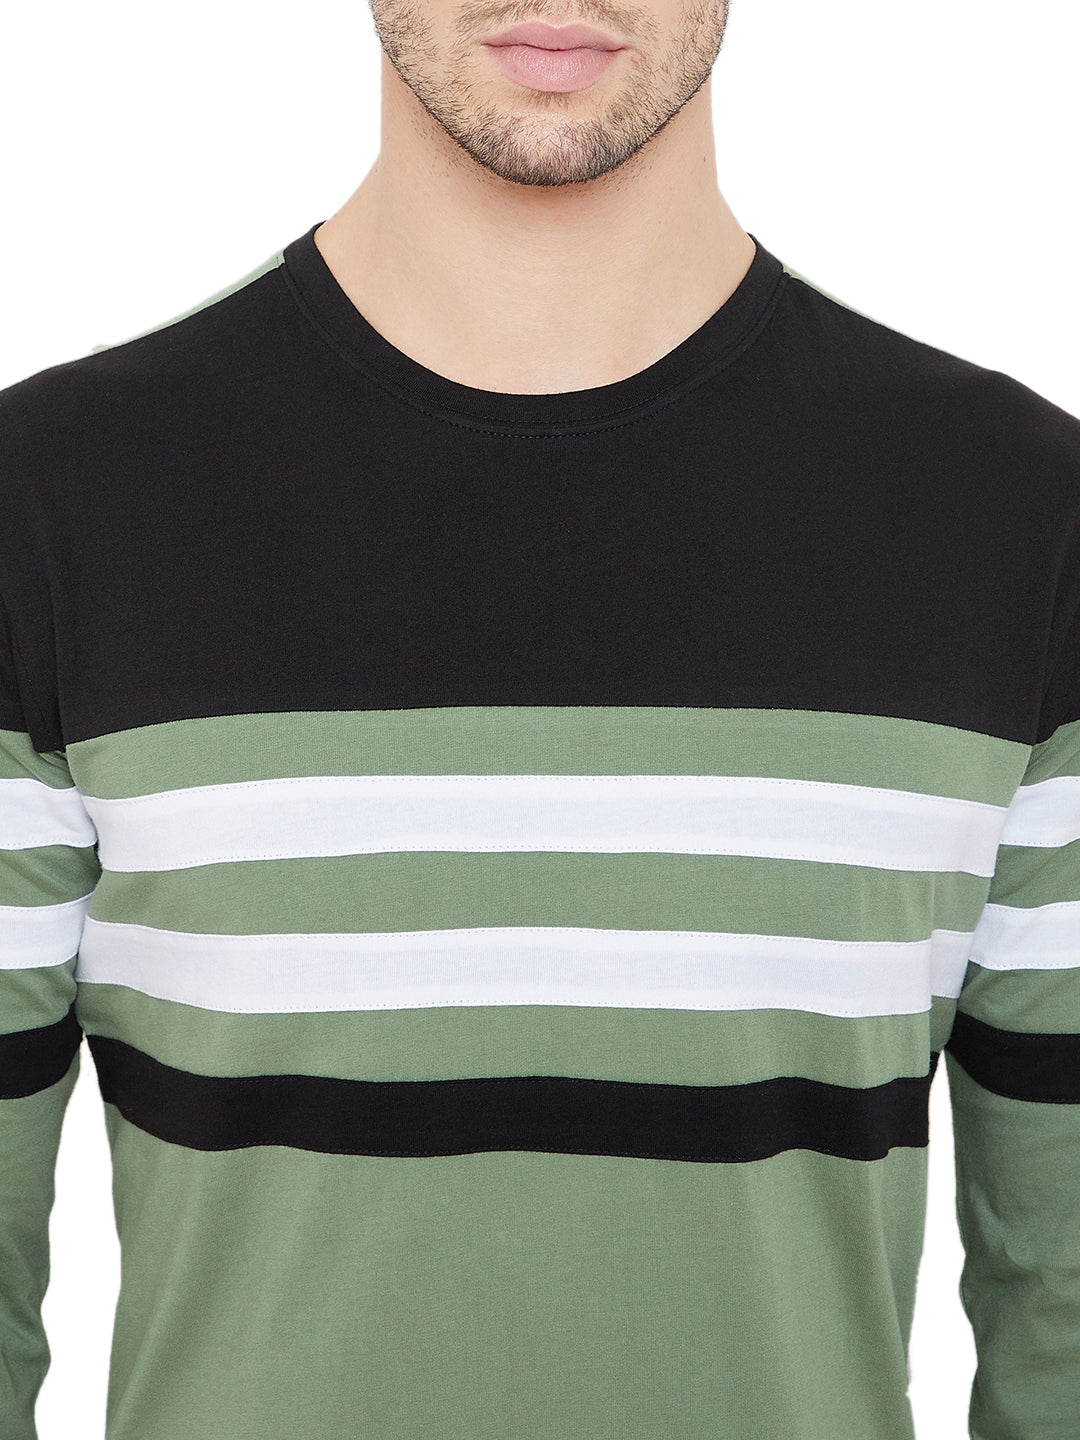 Moss Green/Black/White Men Full Sleeves Round Neck Color Block T-Shirt